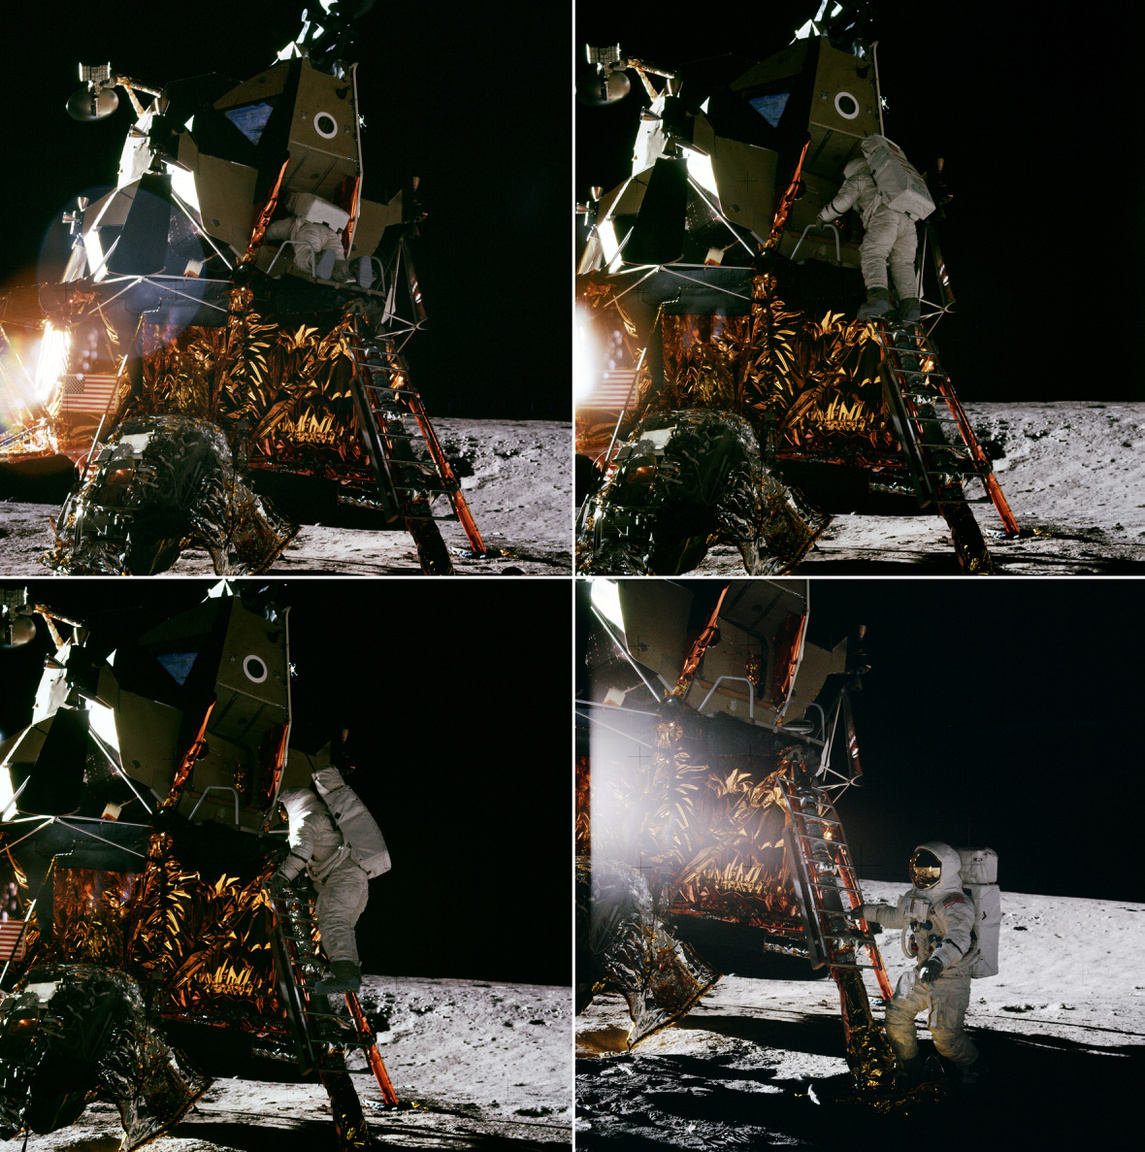 1969. november 19. Alan Bean volt a negyedik ember, aki a Holdra lépett. Íme a történelmi pillanat négy képkockában elmesélve.